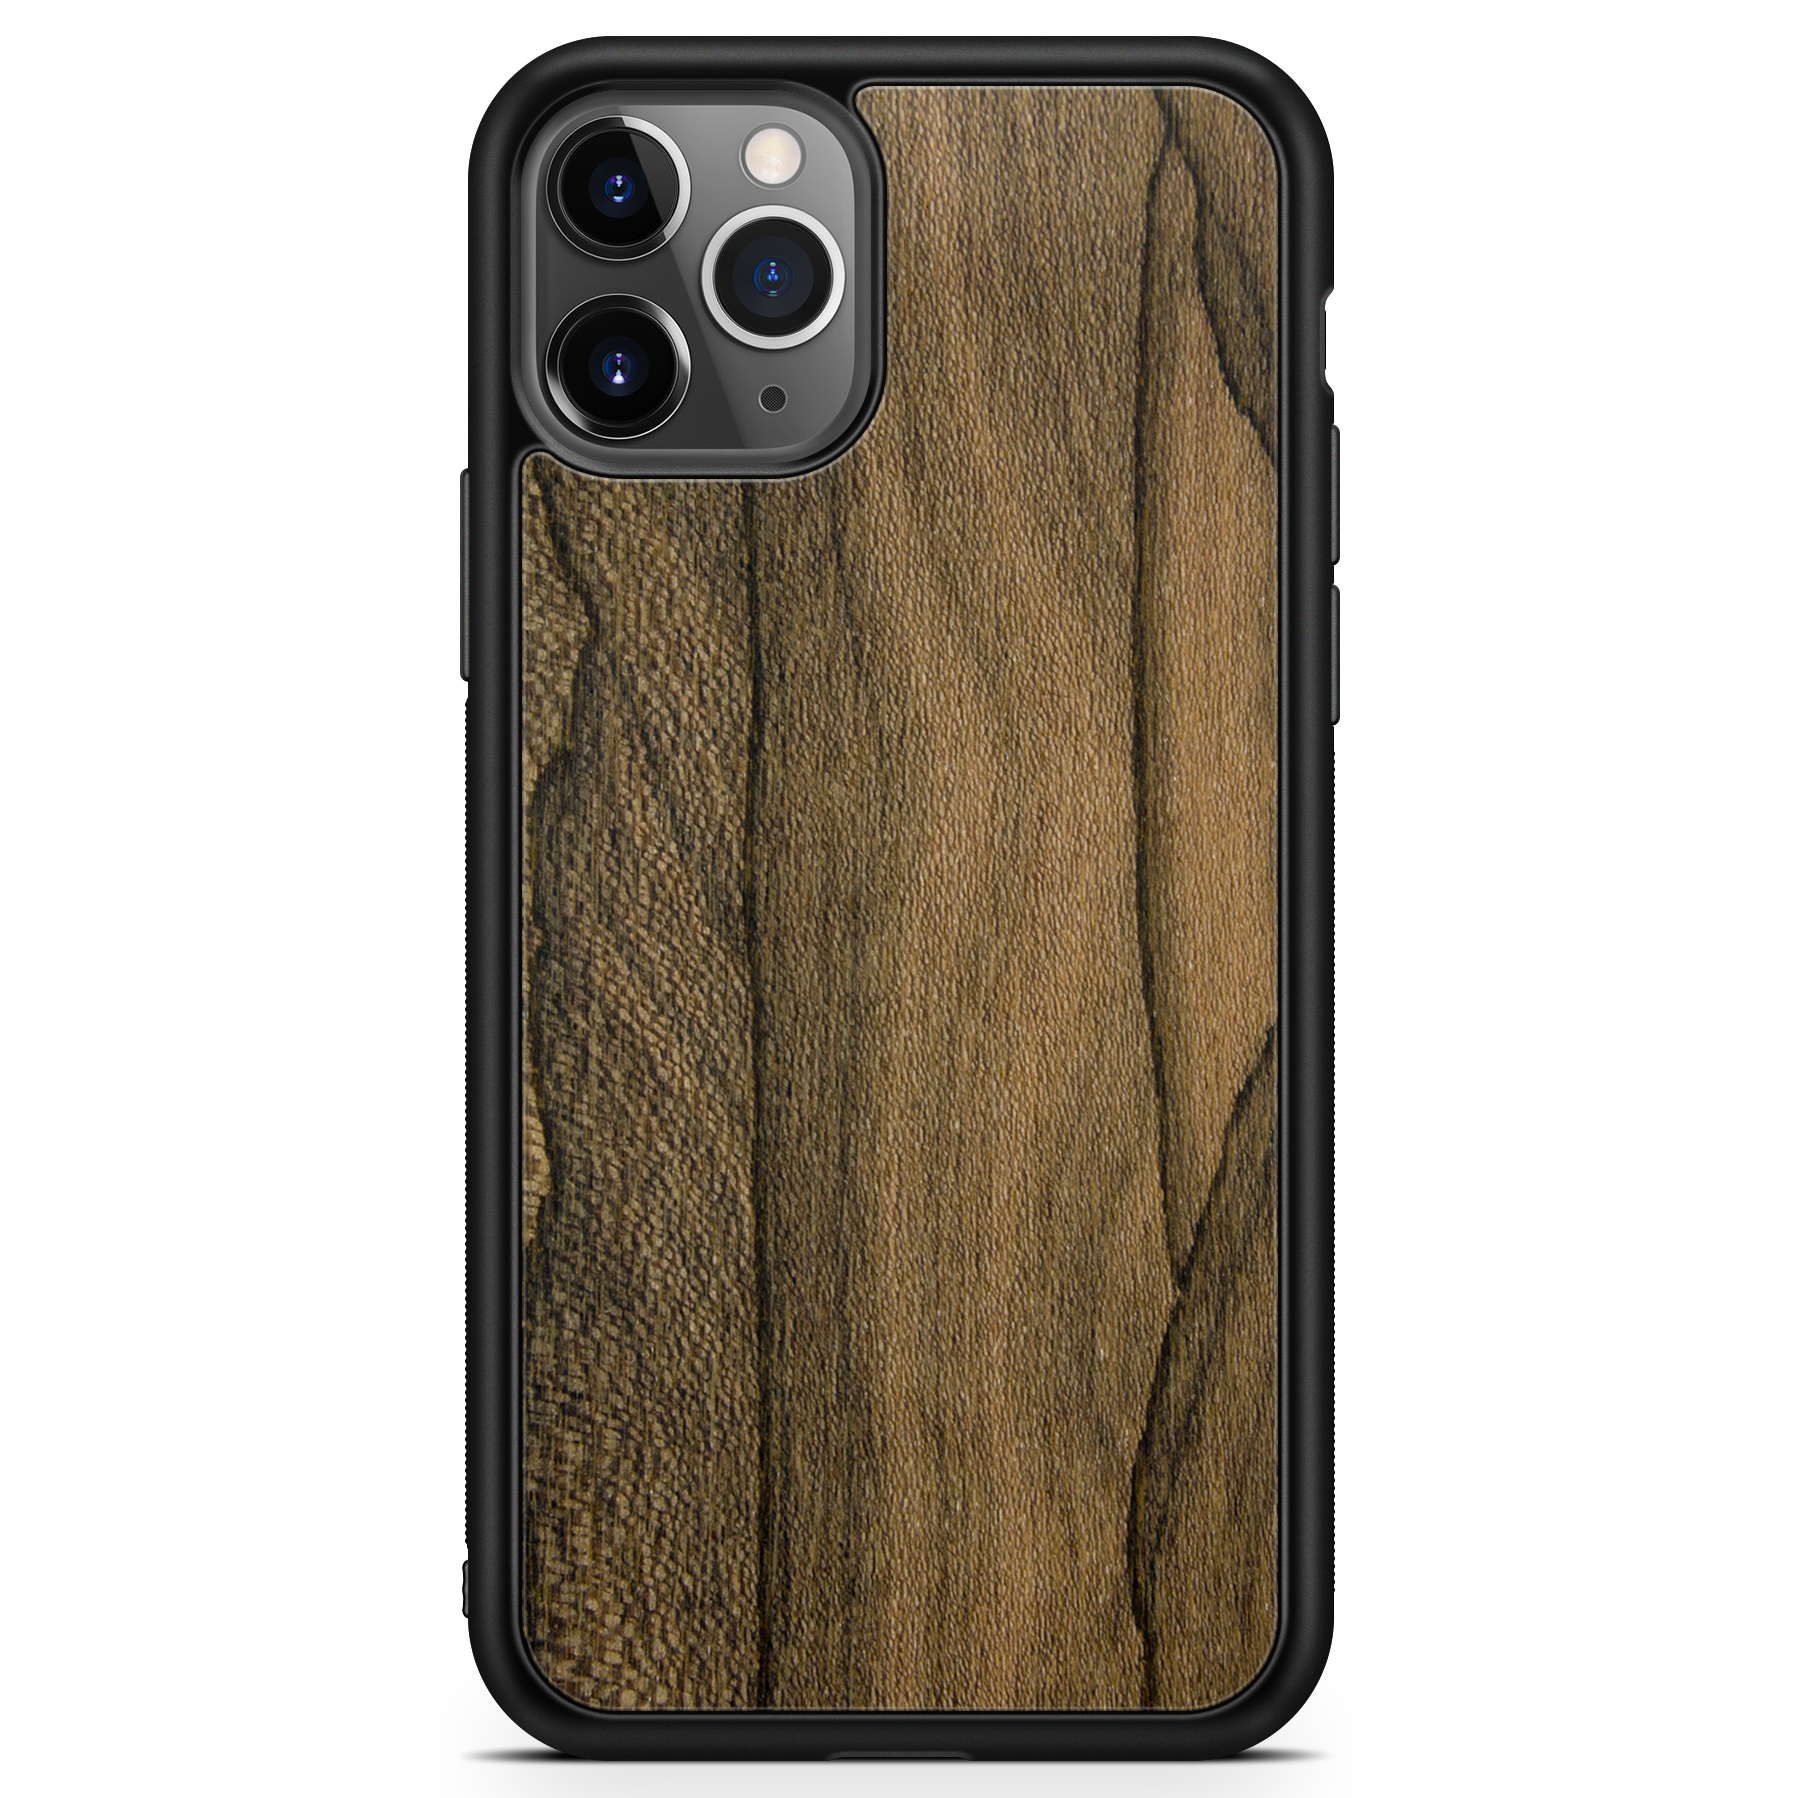 iPhone 11 Pro Ziricote Wood Phone Case